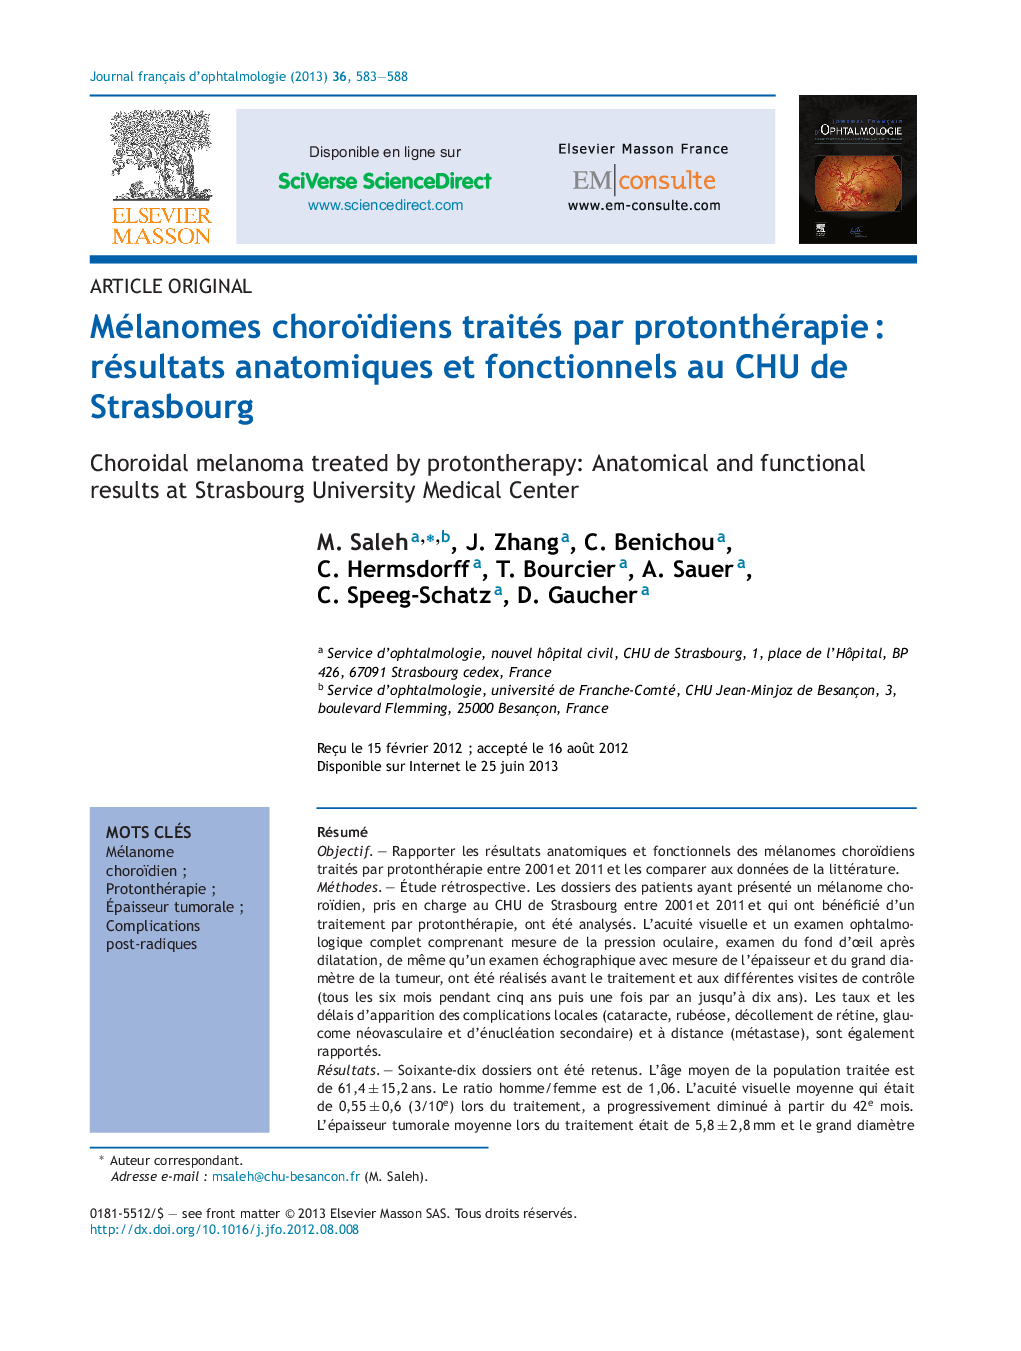 Mélanomes choroïdiens traités par protonthérapieÂ : résultats anatomiques et fonctionnels au CHU de Strasbourg